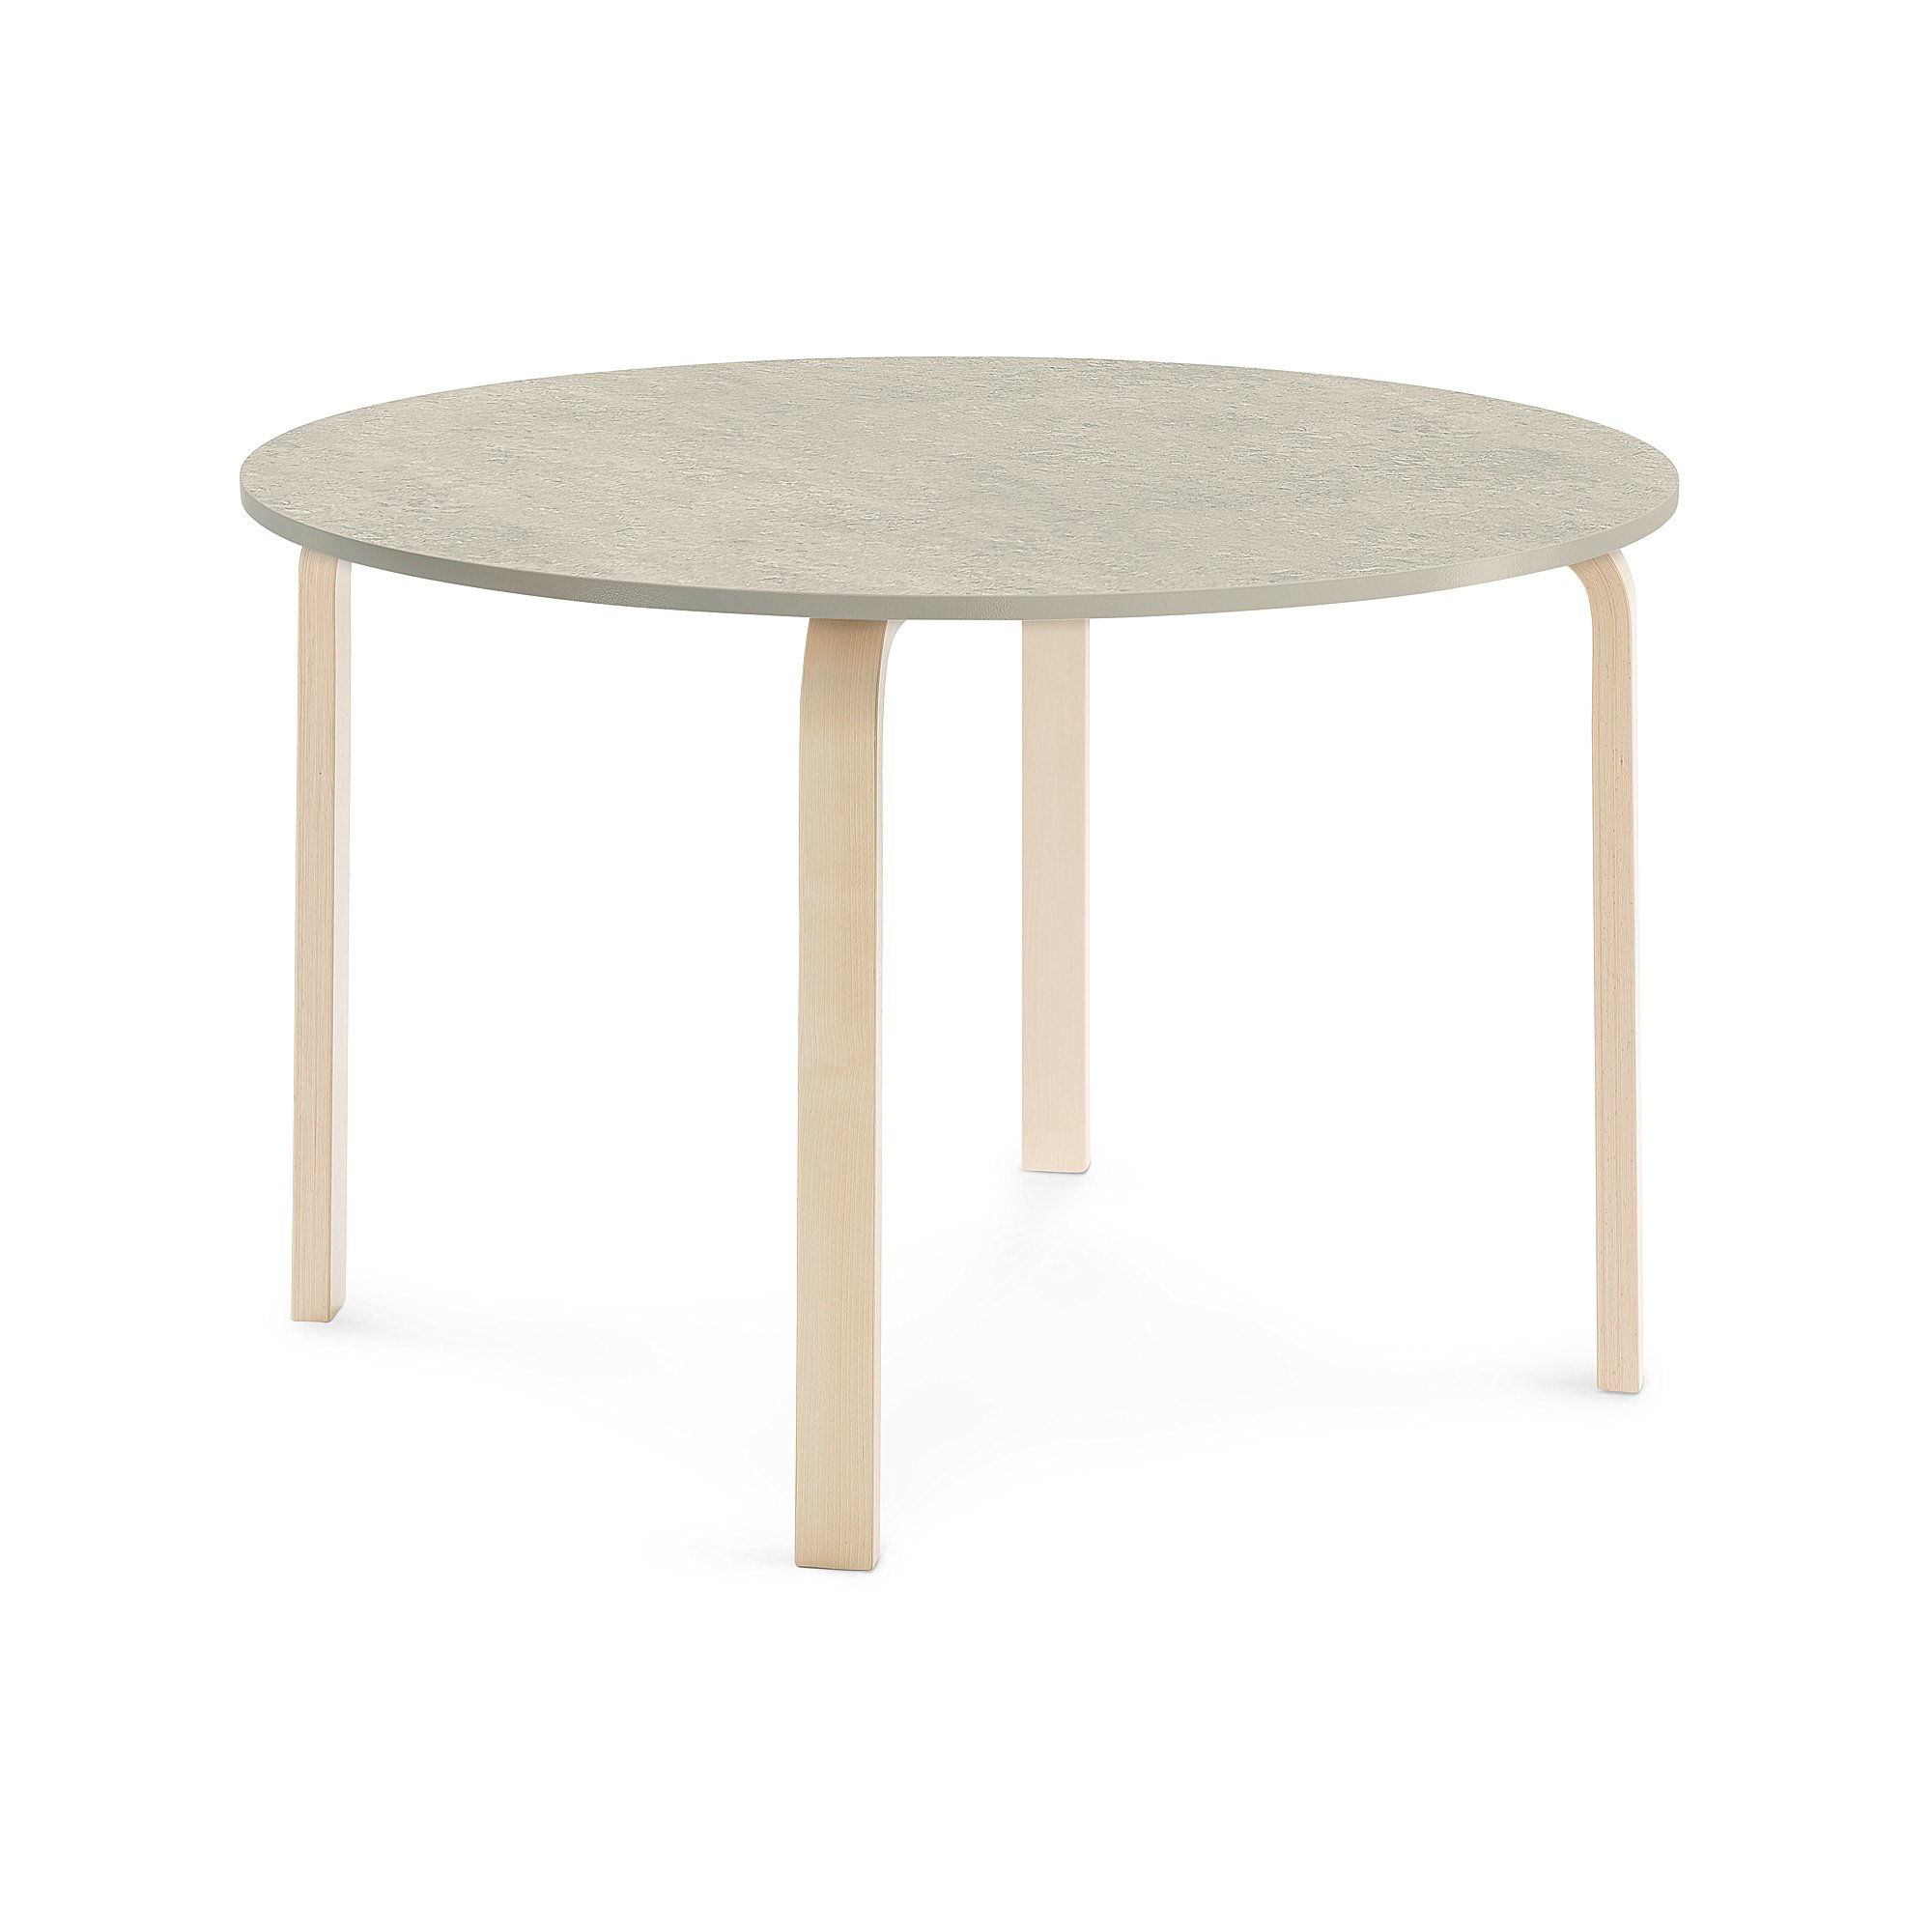 Stůl ELTON, Ø 1200x710 mm, bříza, akustické linoleum, šedá